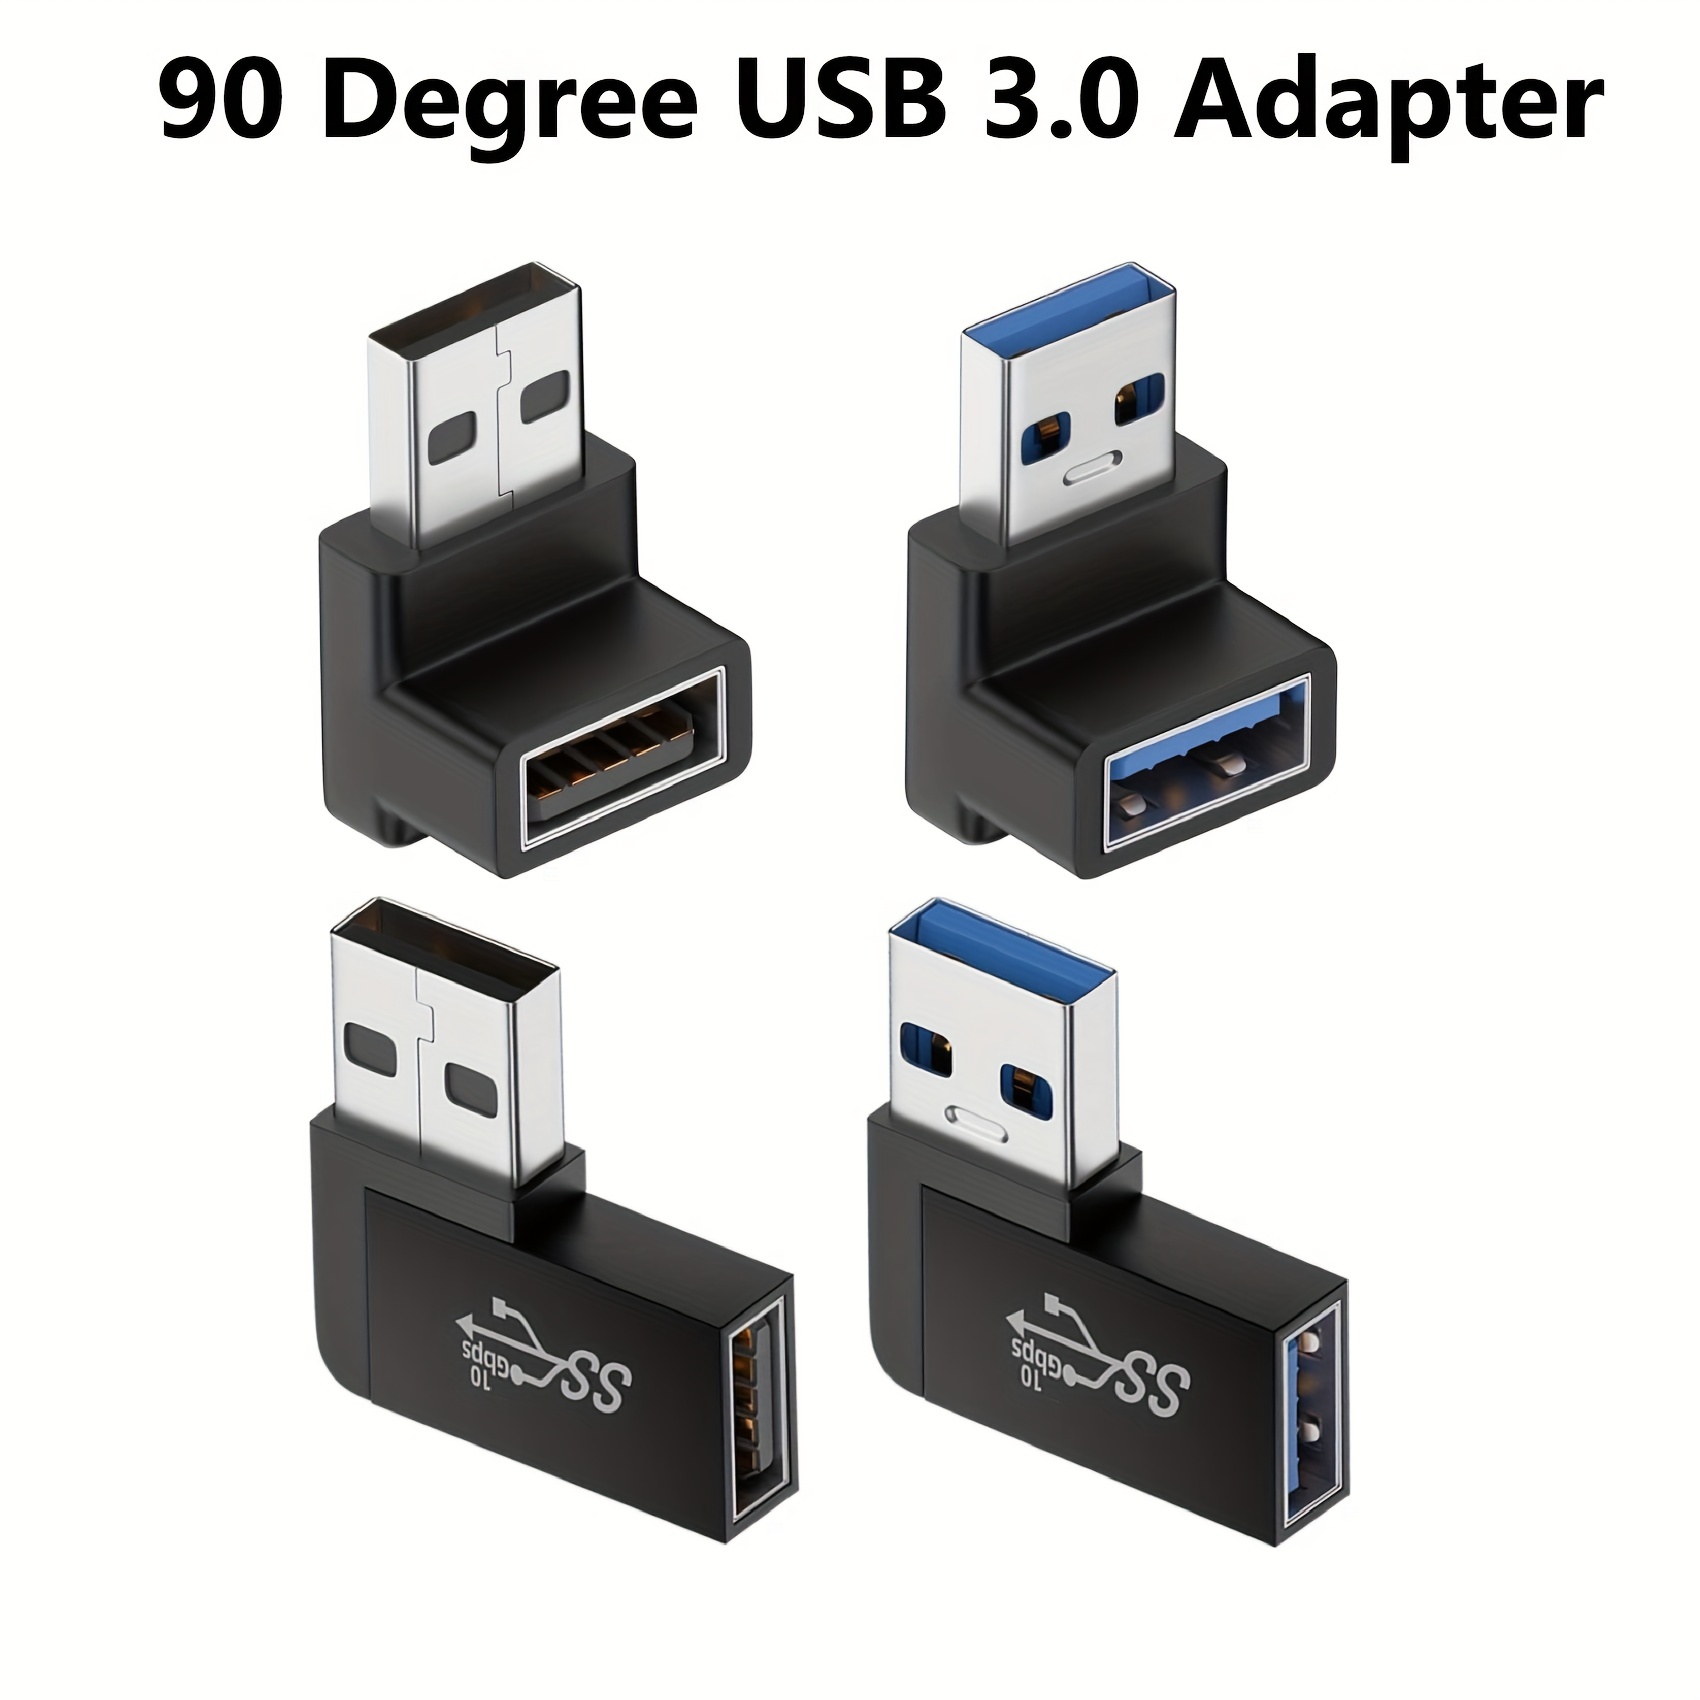 Adaptateur USB 3.0 90 degrés angle droit connecteur USB type A mâle à  extension femelle 2 pcs (angle gauche et angle droit inclus)